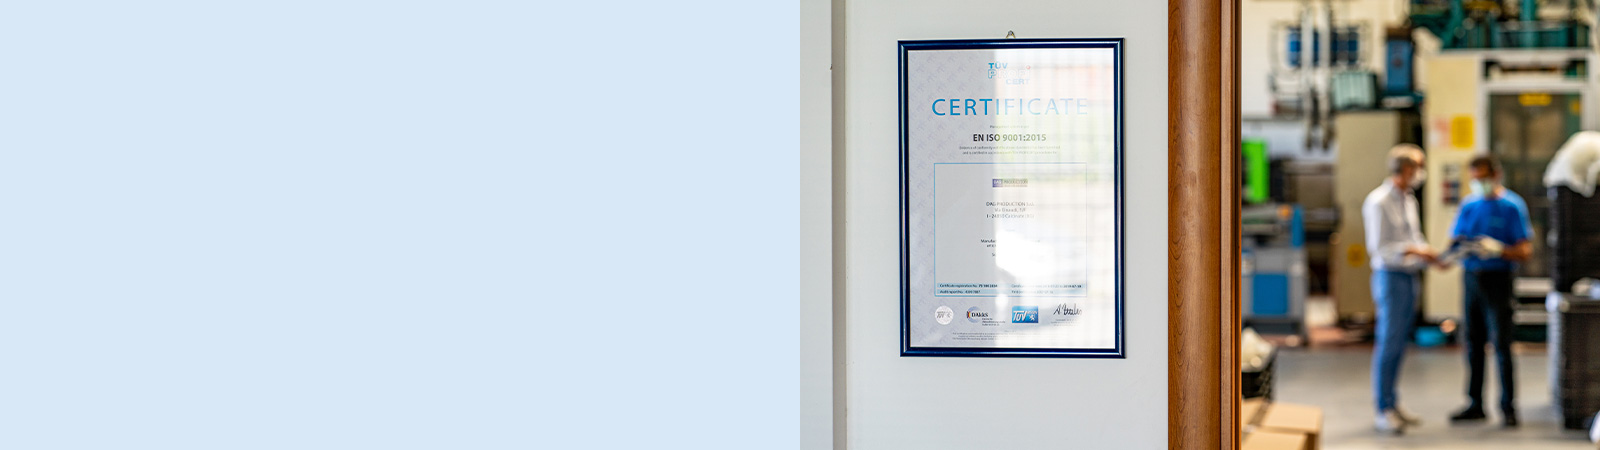 ISO-Norm 9001:2015 zertifiziert